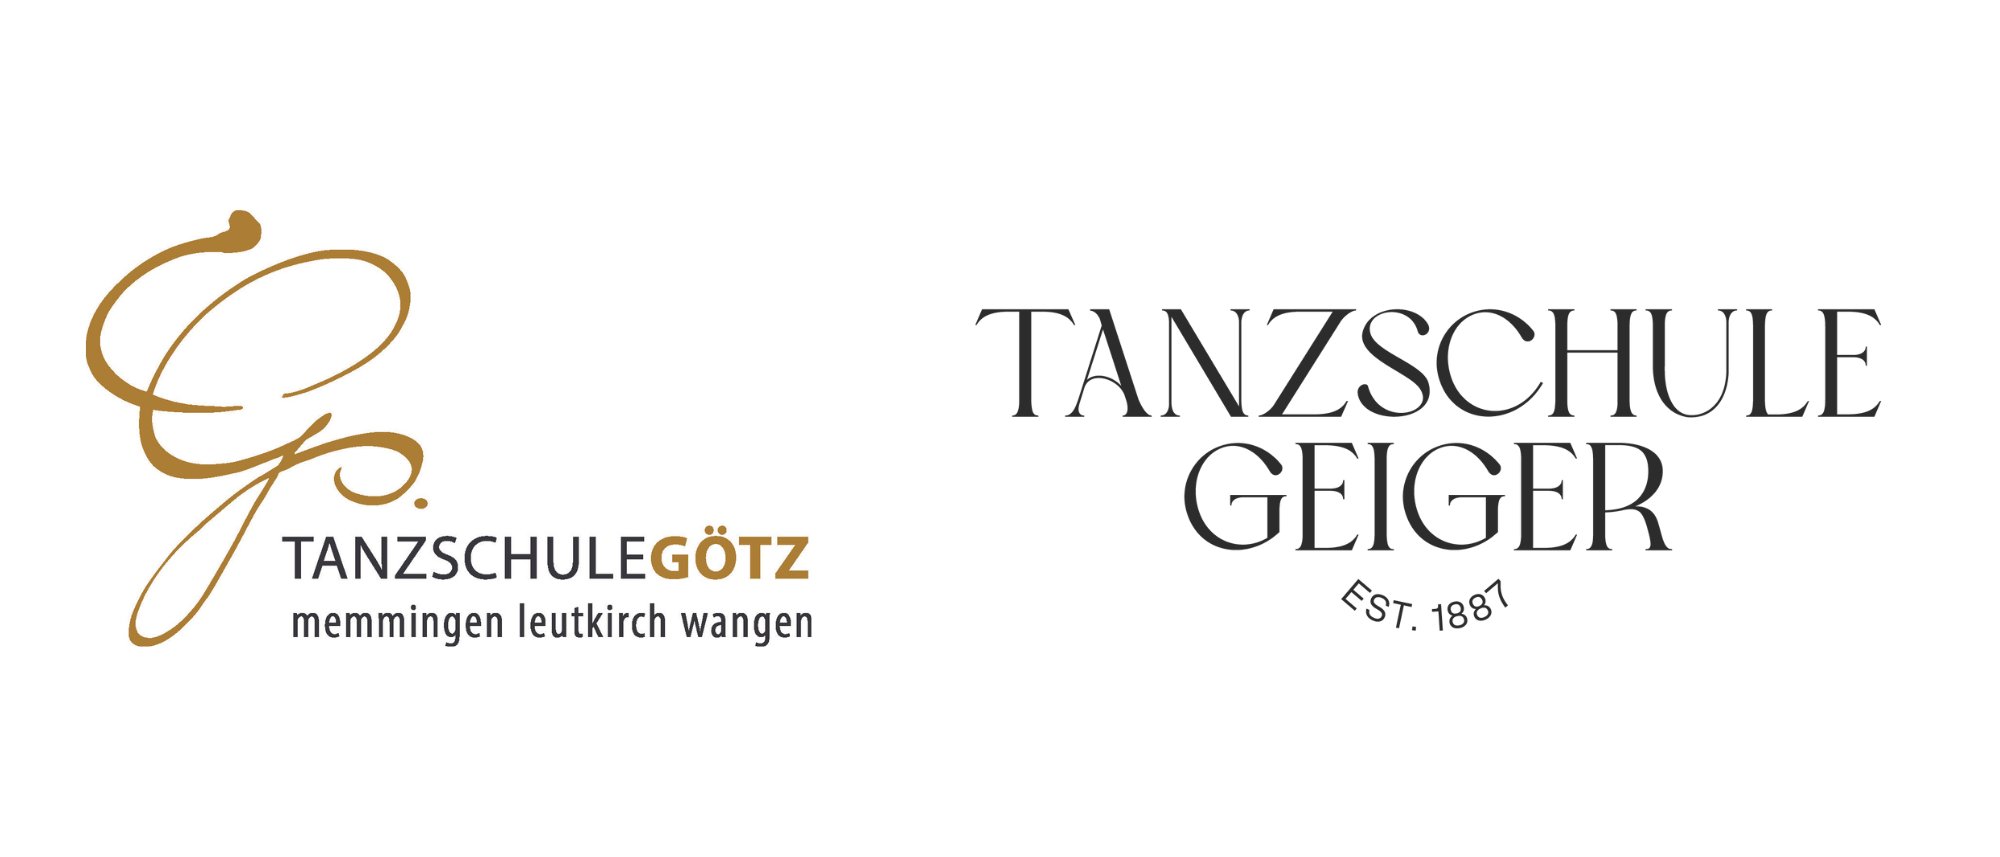 Tanzschule Götz & Geiger